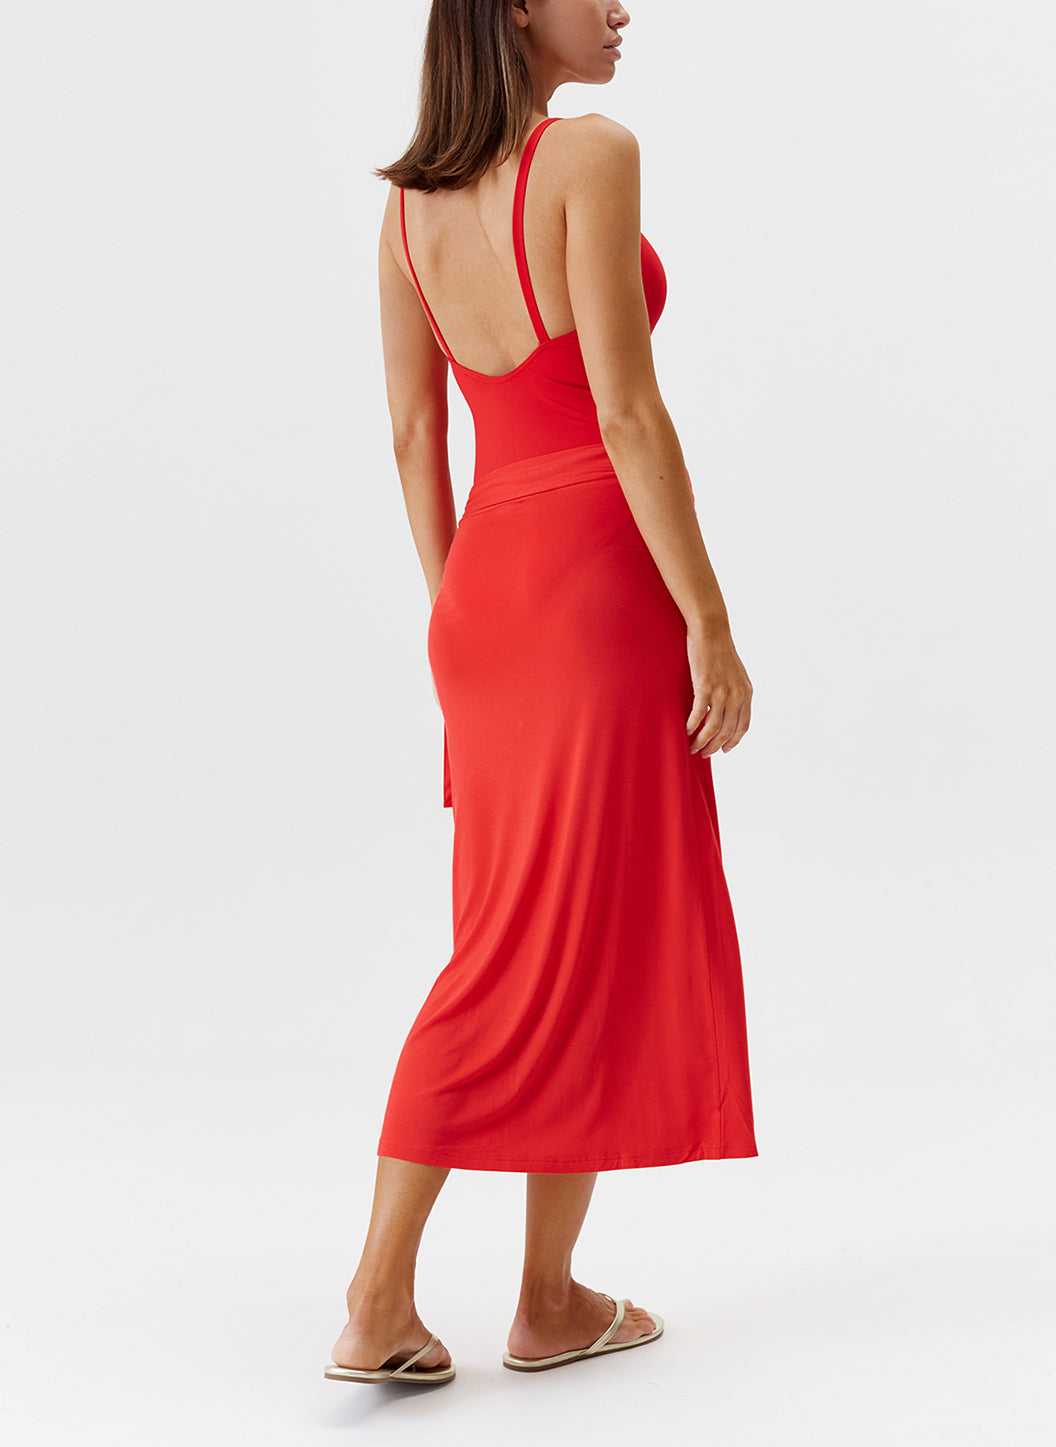 ida red skirt model 2024 B